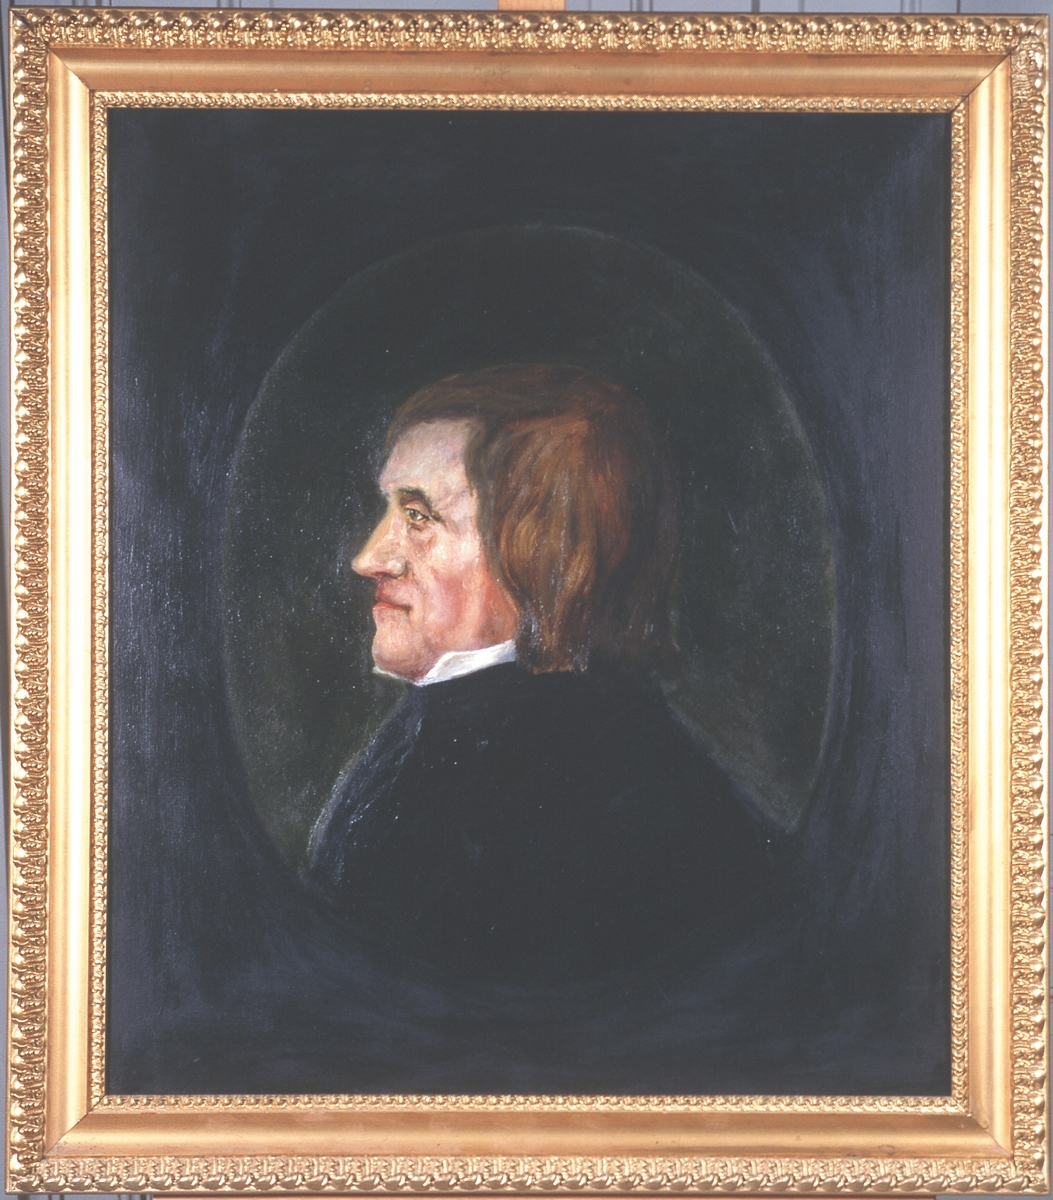 Portrett av Asgaut O. Regelstad 
Mann med brunt halvlangt hår, hvit skjortekrage, mørk kledning
Innskrevet i oval, lysere enn resten av bakgrunnen